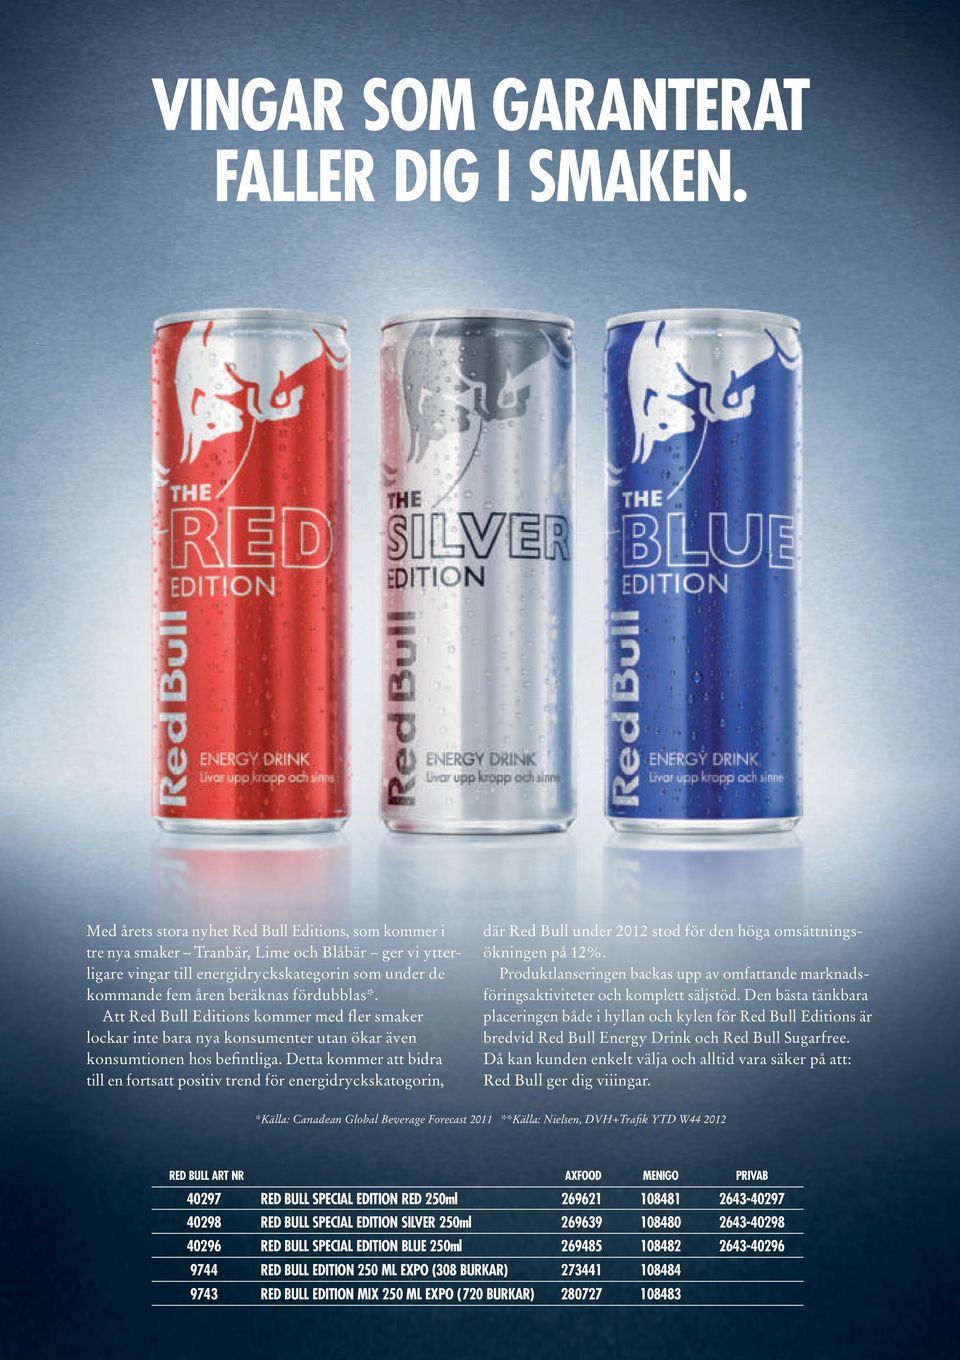 Att Red Bull Editions kommer med fler smaker lockar inte bara nya konsumenter utan ökar även konsumtionen hos befintliga.